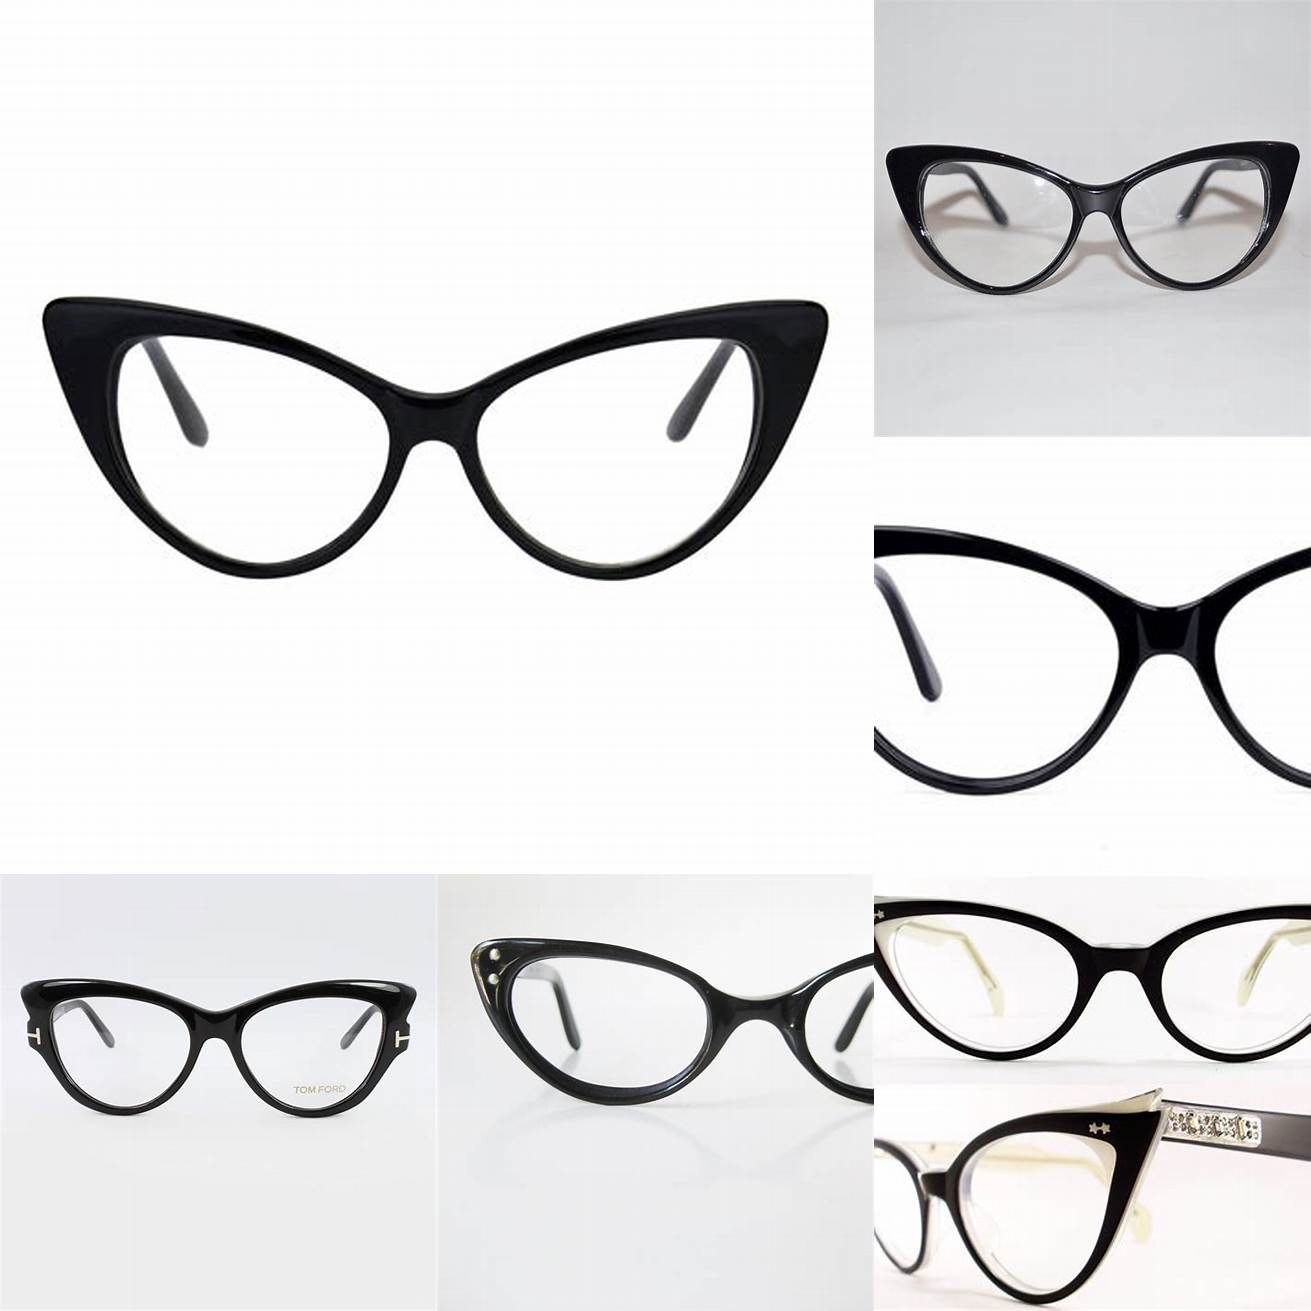 1 Classic Black Cat Eye Glasses